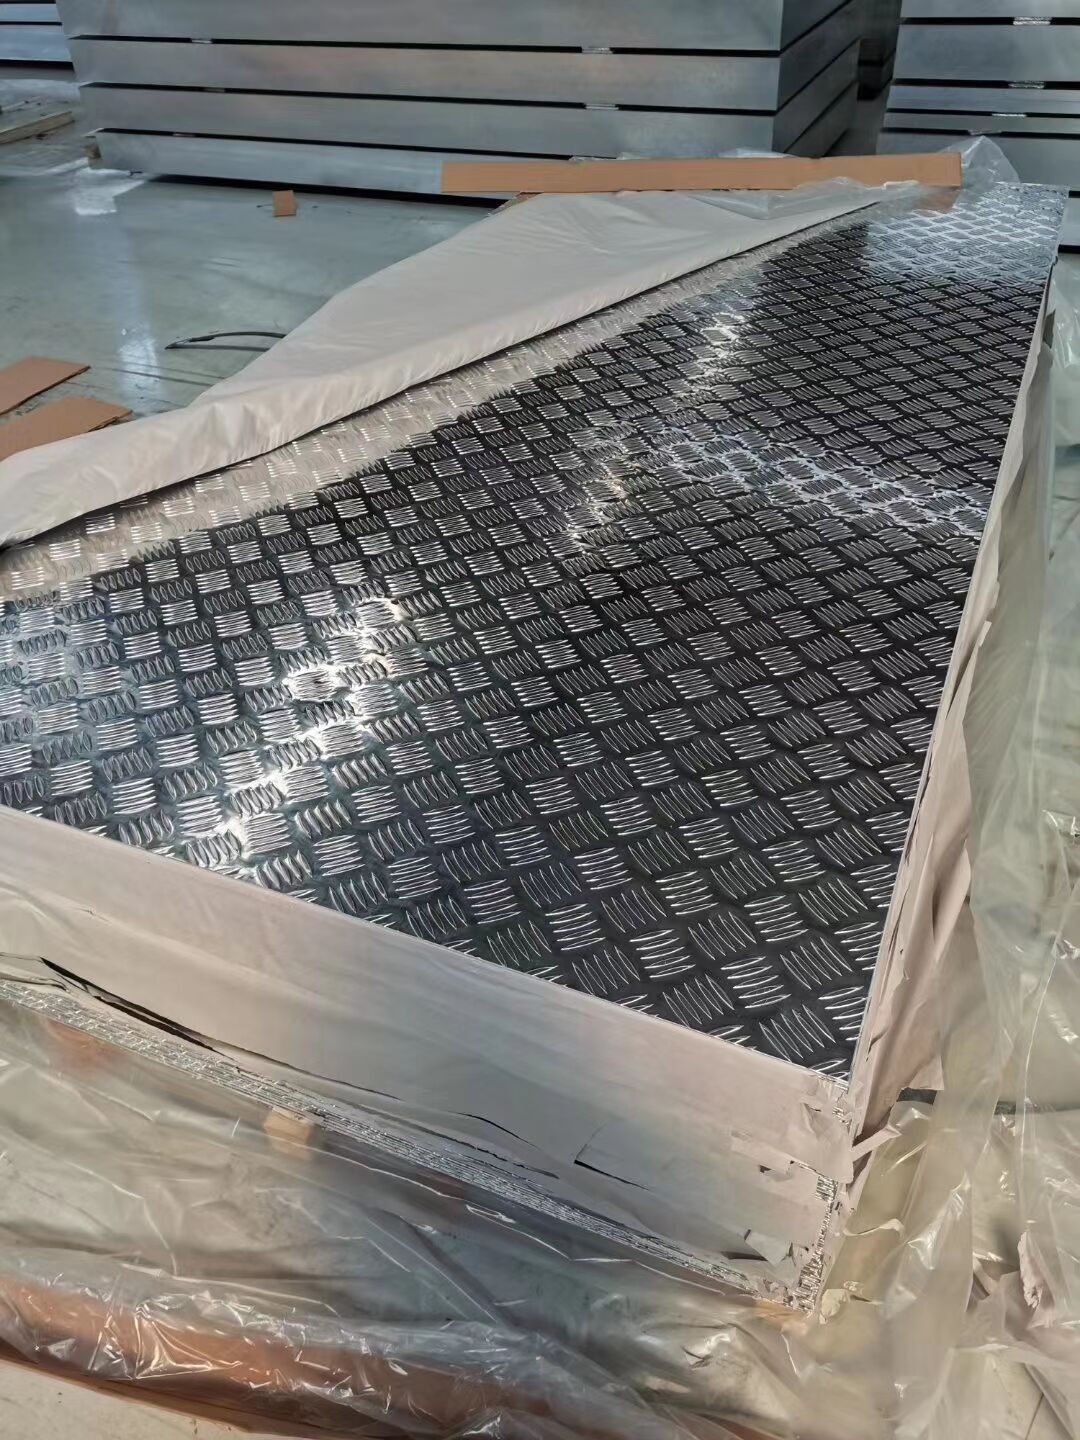 5052花纹铝板30年铝板生产经